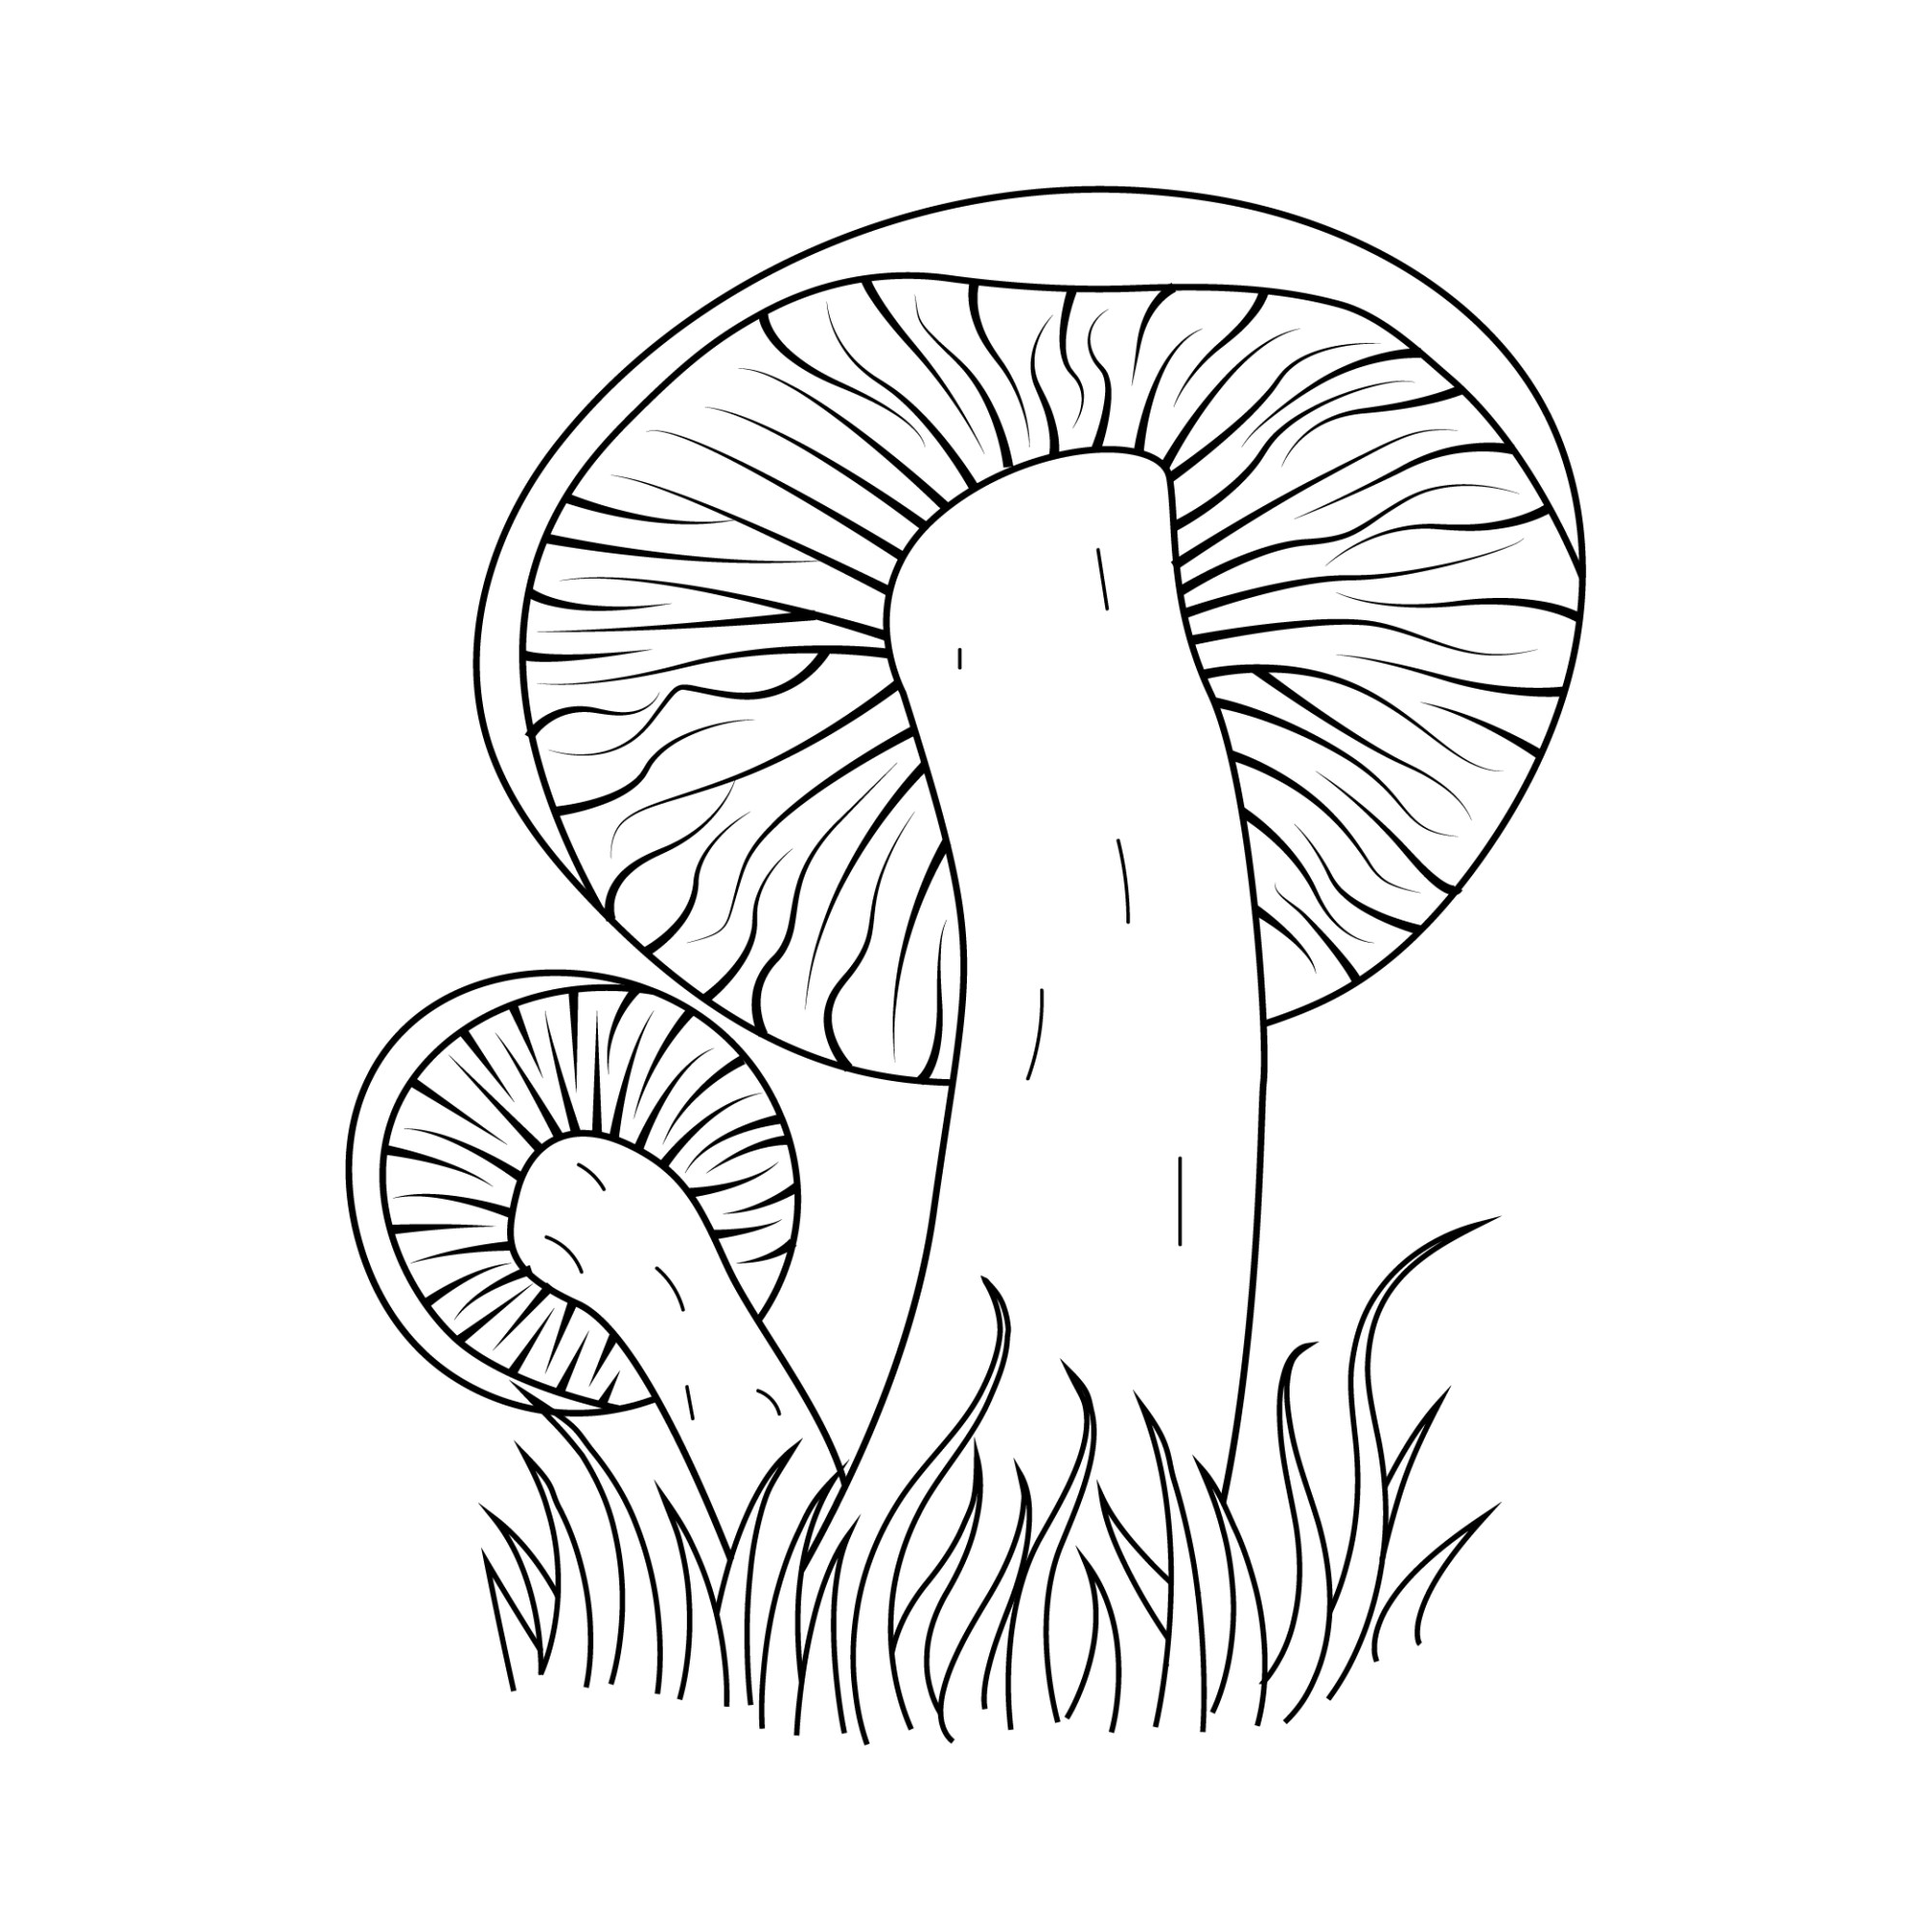 Раскраска для детей: гриб подосиновик